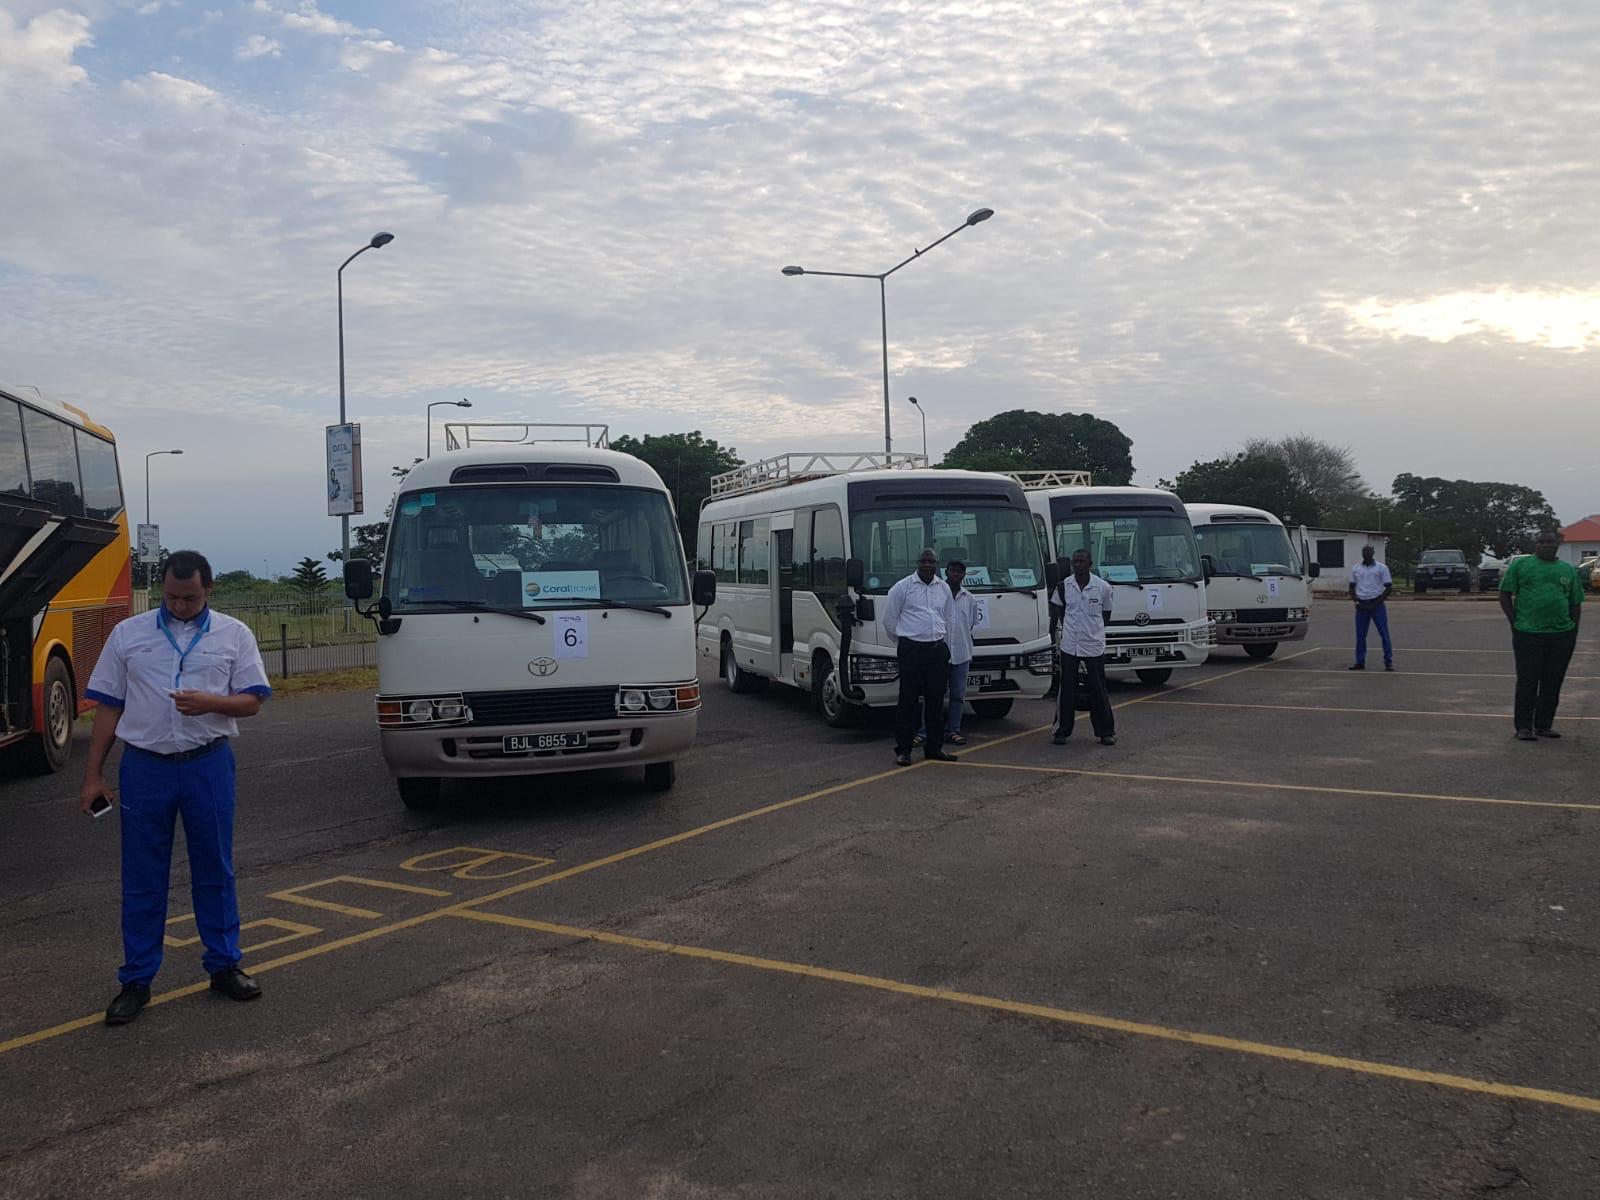 Coral Travel устроил проводы первого рейса в Гамбию